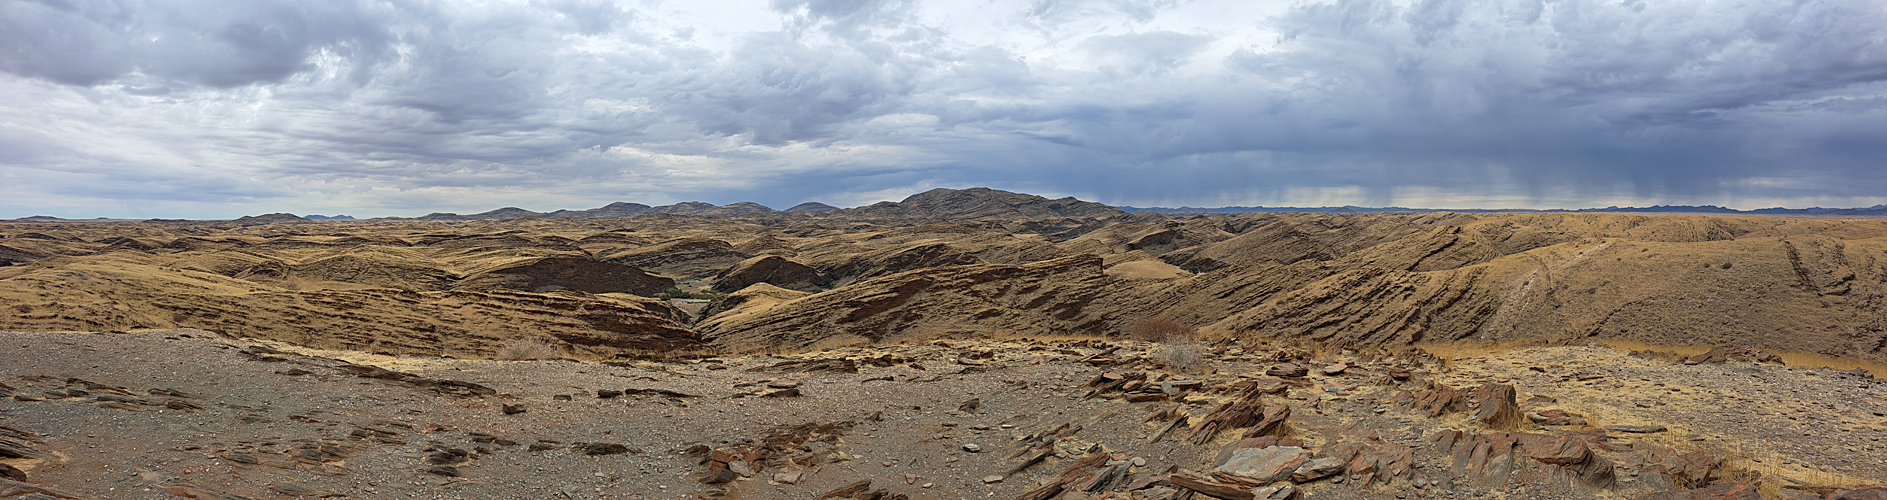 Photo panoramique du canyon de Kuiseb